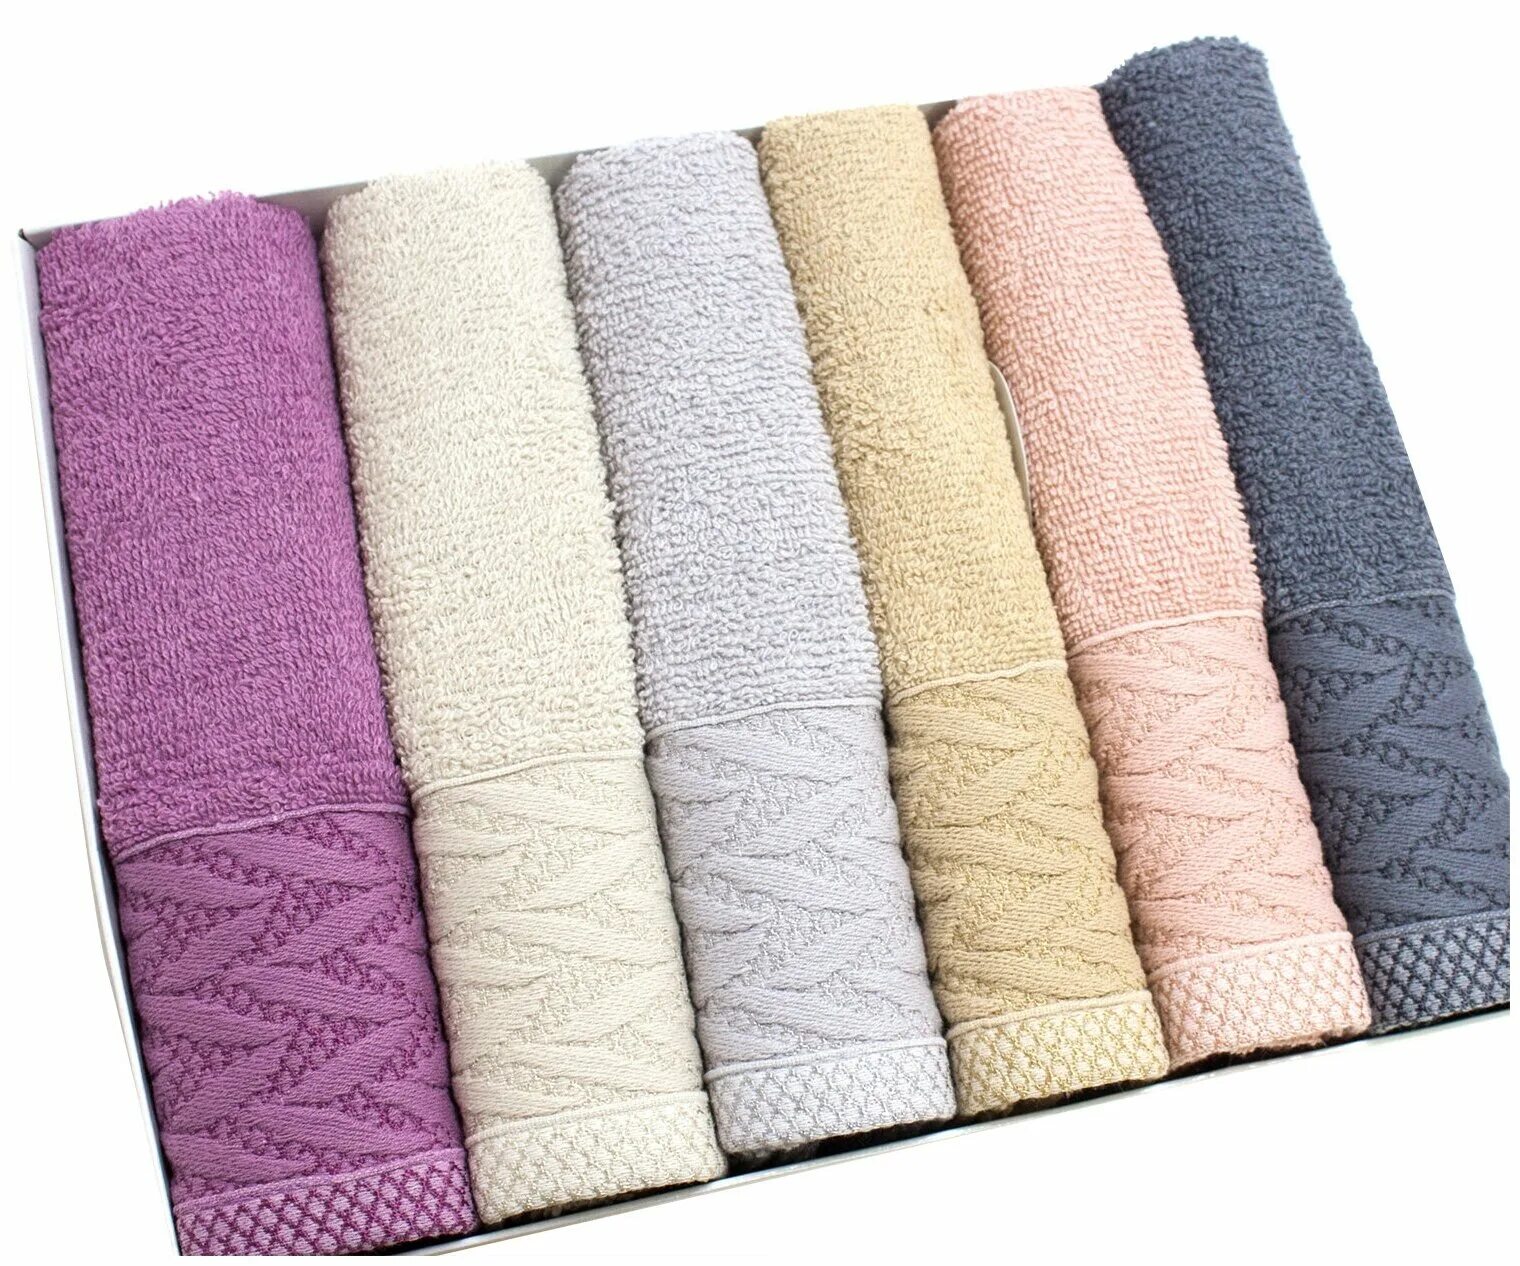 Купить полотенце в самаре. Maribor полотенца Bamboo. Fakili Турция полотенца. Sel полотенце Bamboo. Турецкие бамбуковые полотенца.